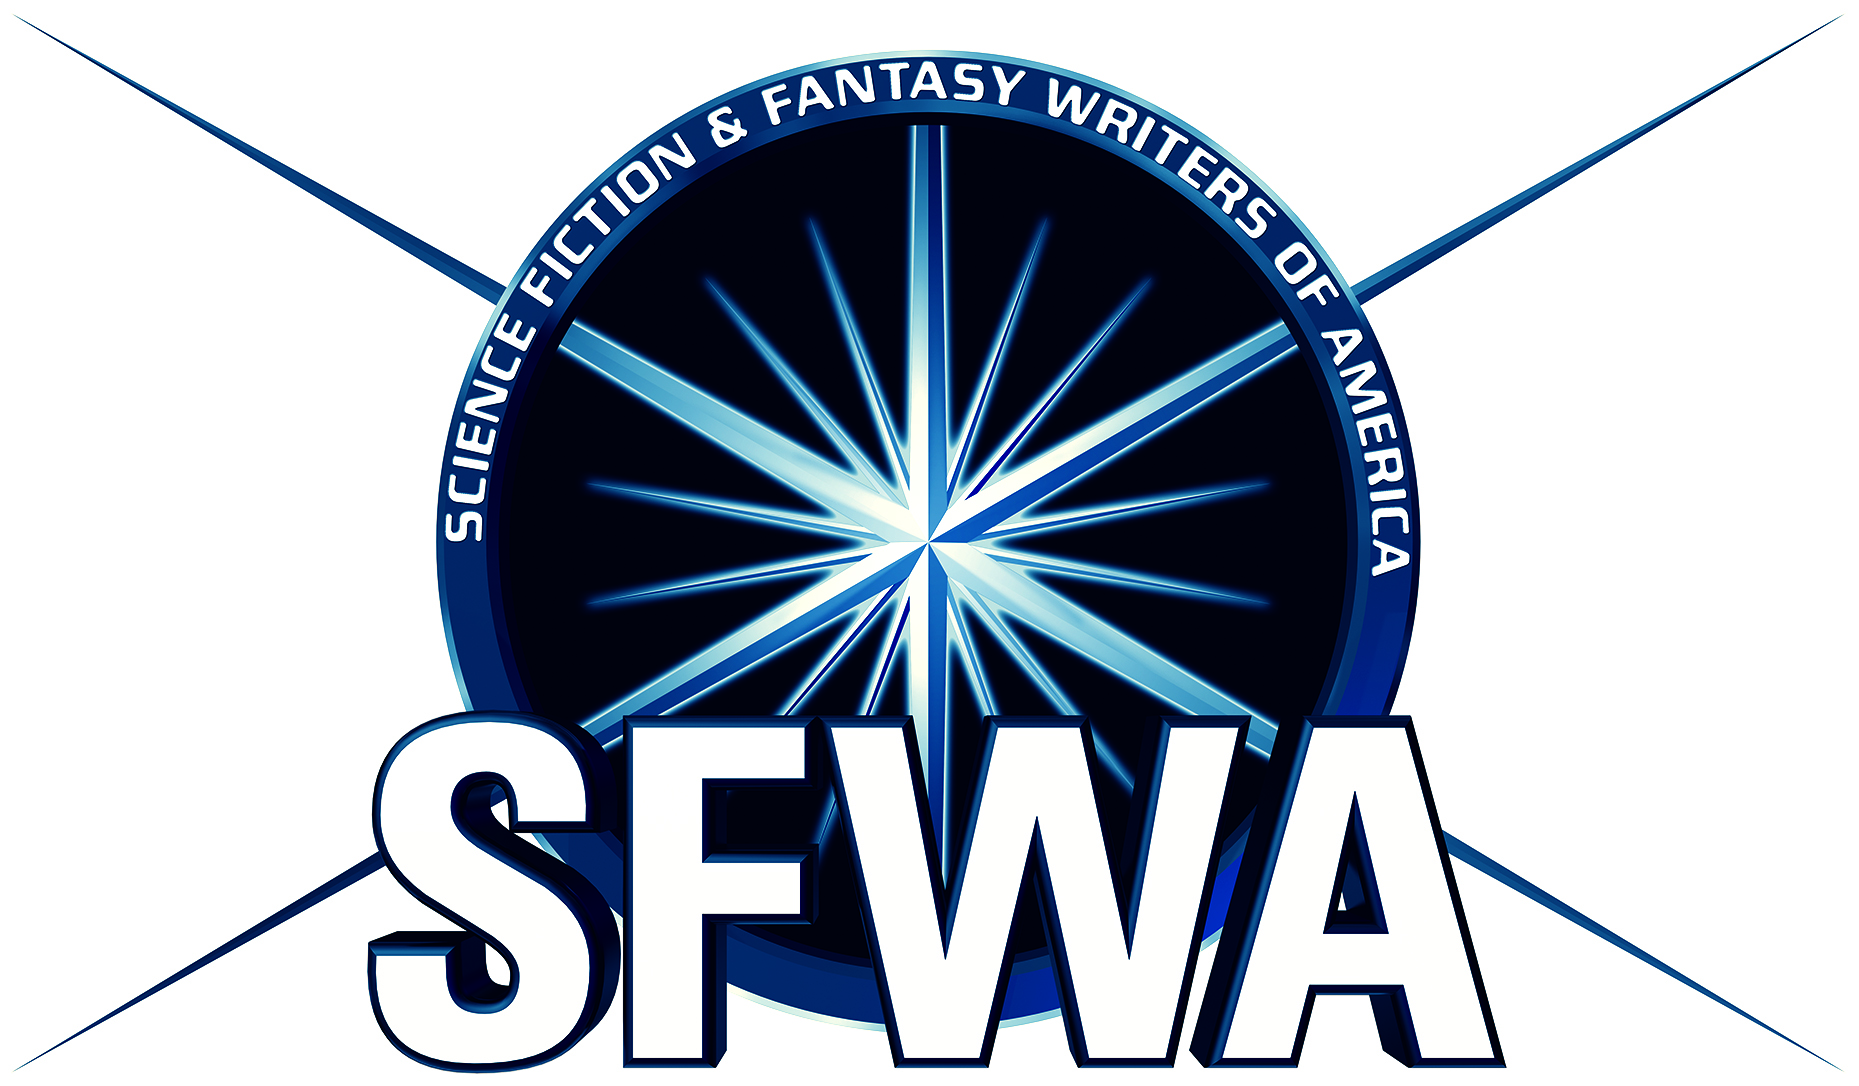 Image of membership badge for SFWA